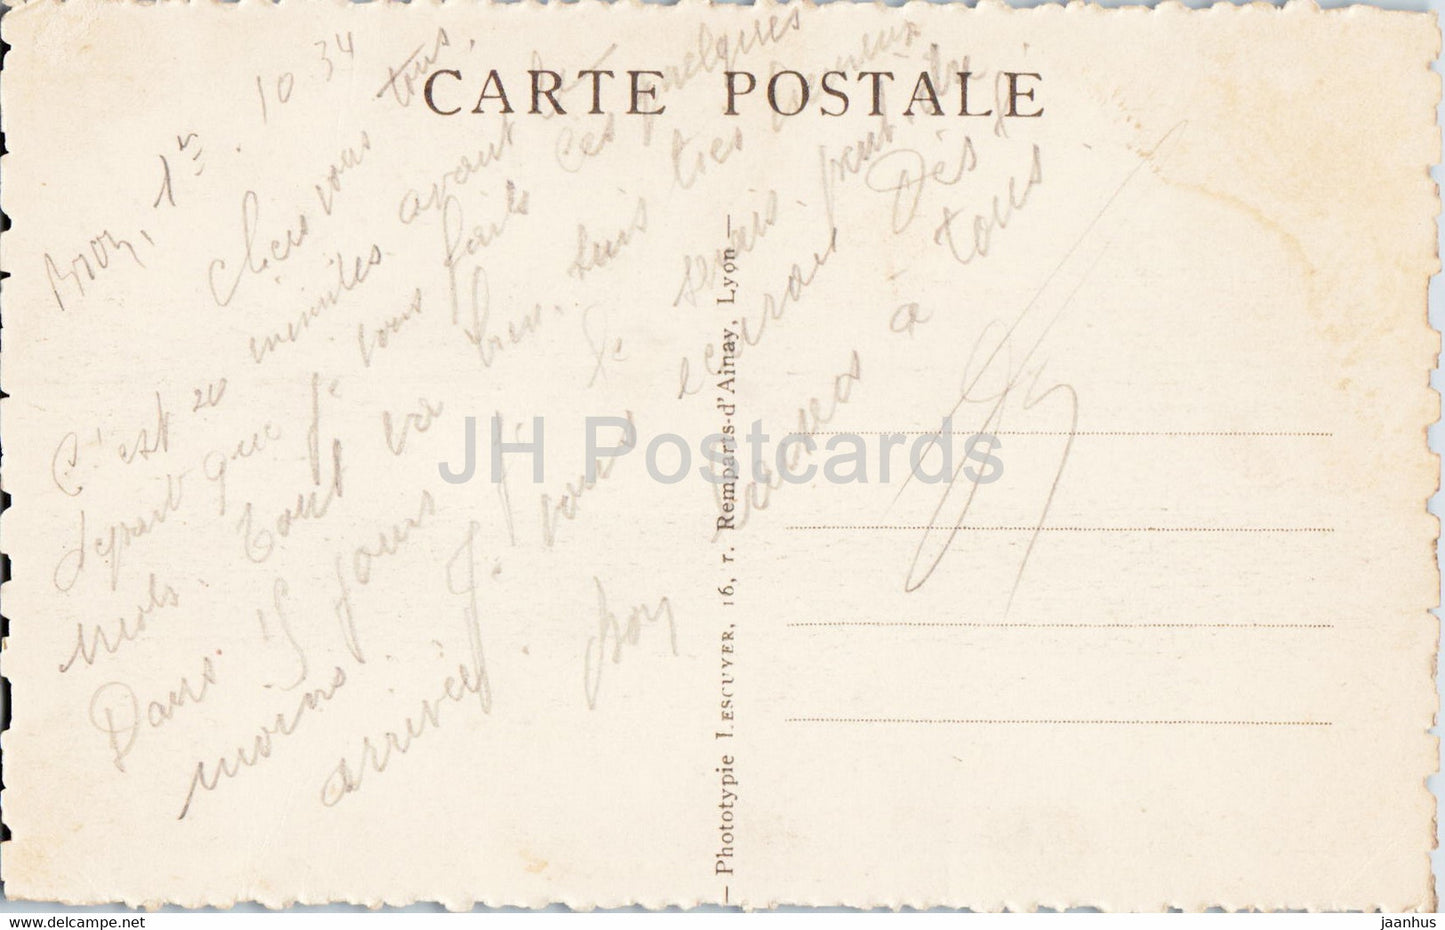 Lyon - Place Bellecour - Statue de Louis XIV - horse - old postcard - 1934 - France - used